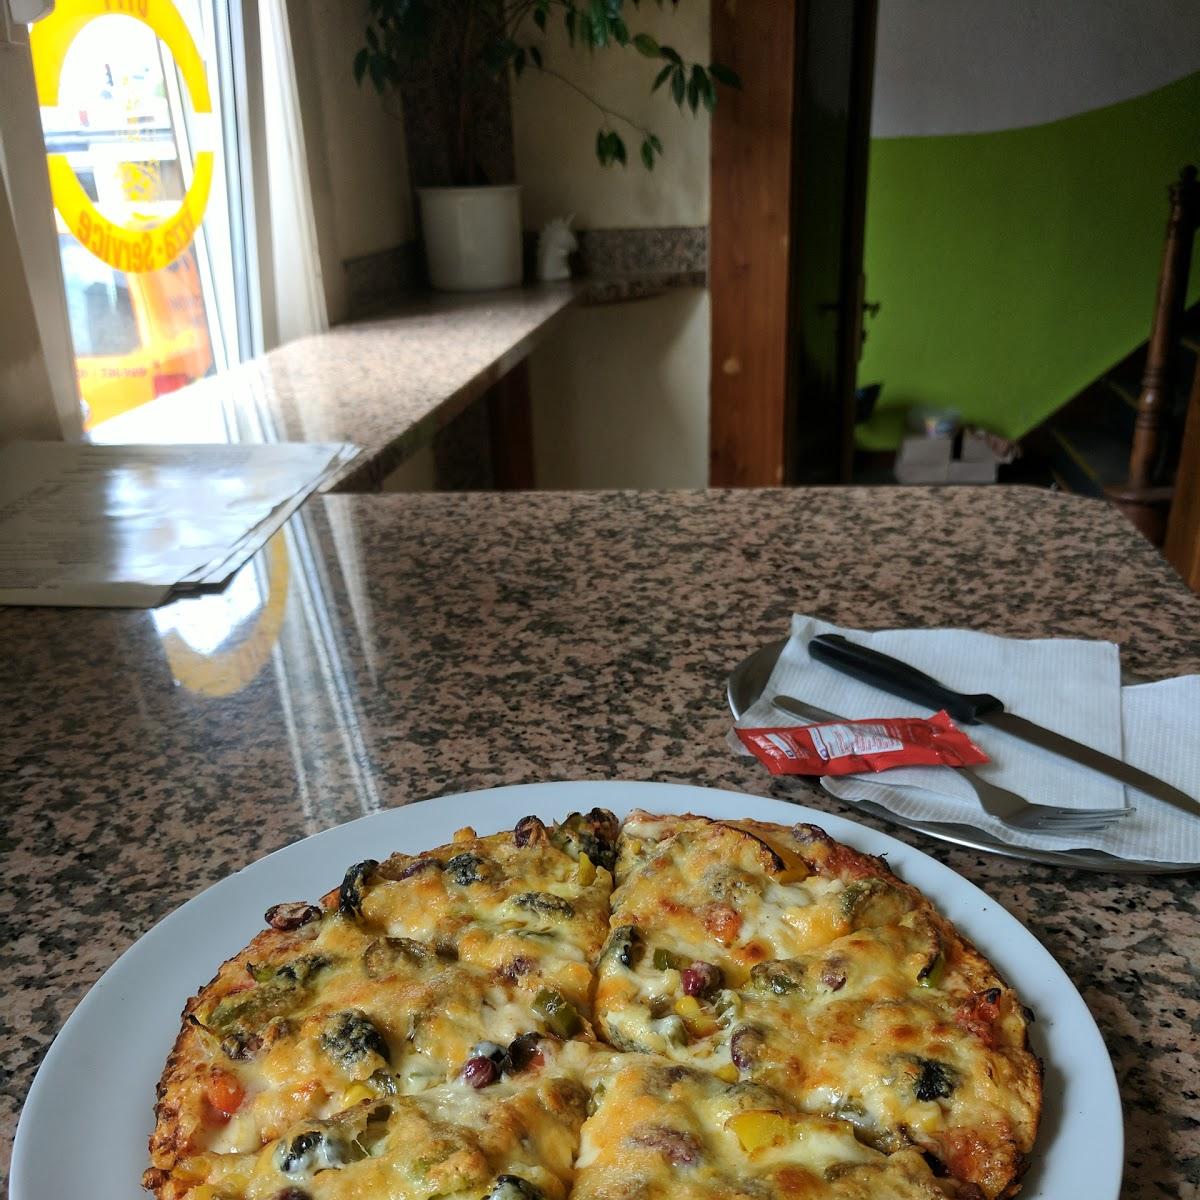 Restaurant "City Pizza" in Gotha